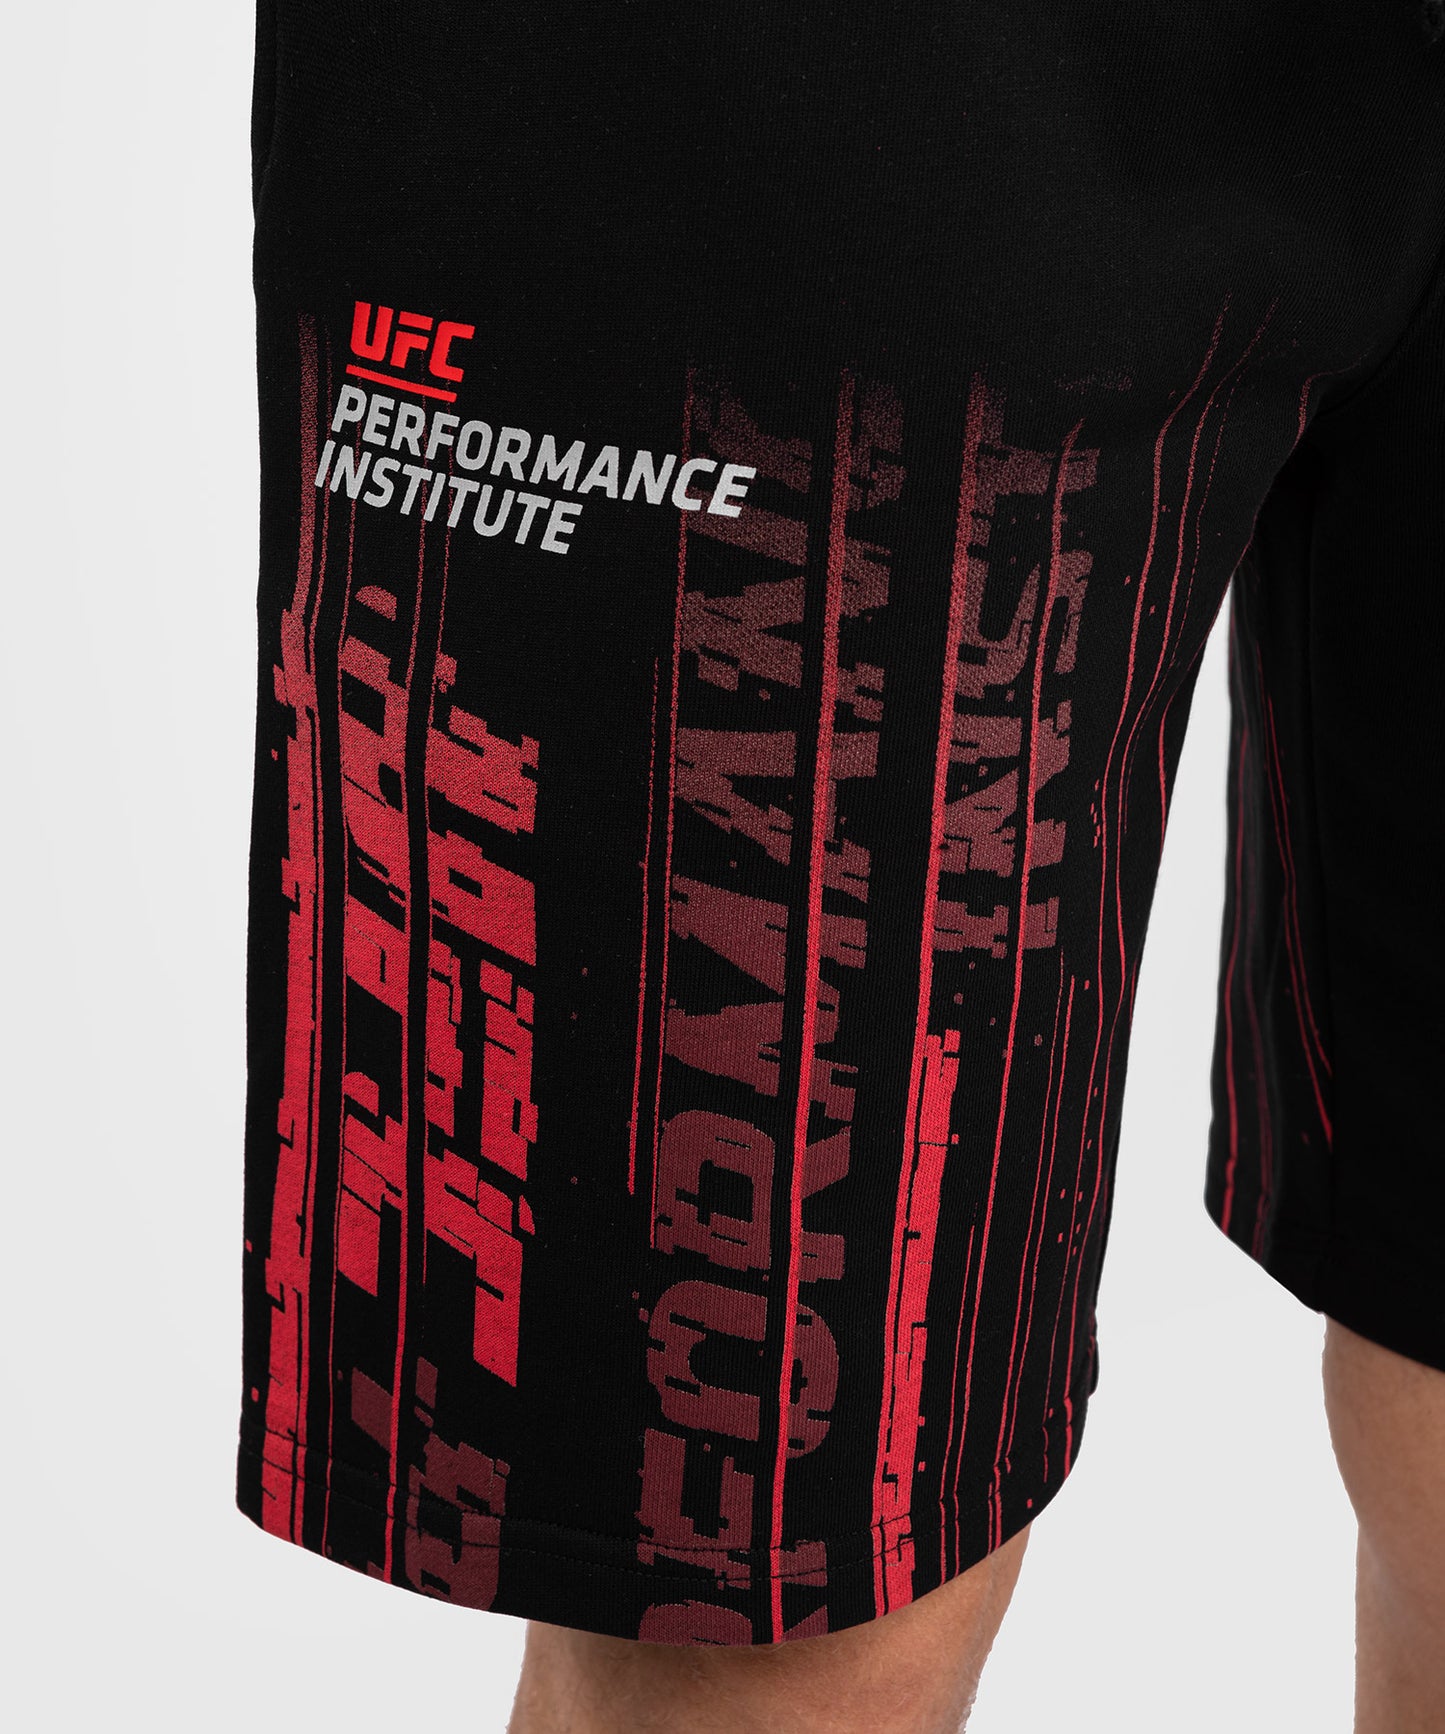 UFC Venum Performance Institute 2.0 Men’s Cotton Short - Black/Red